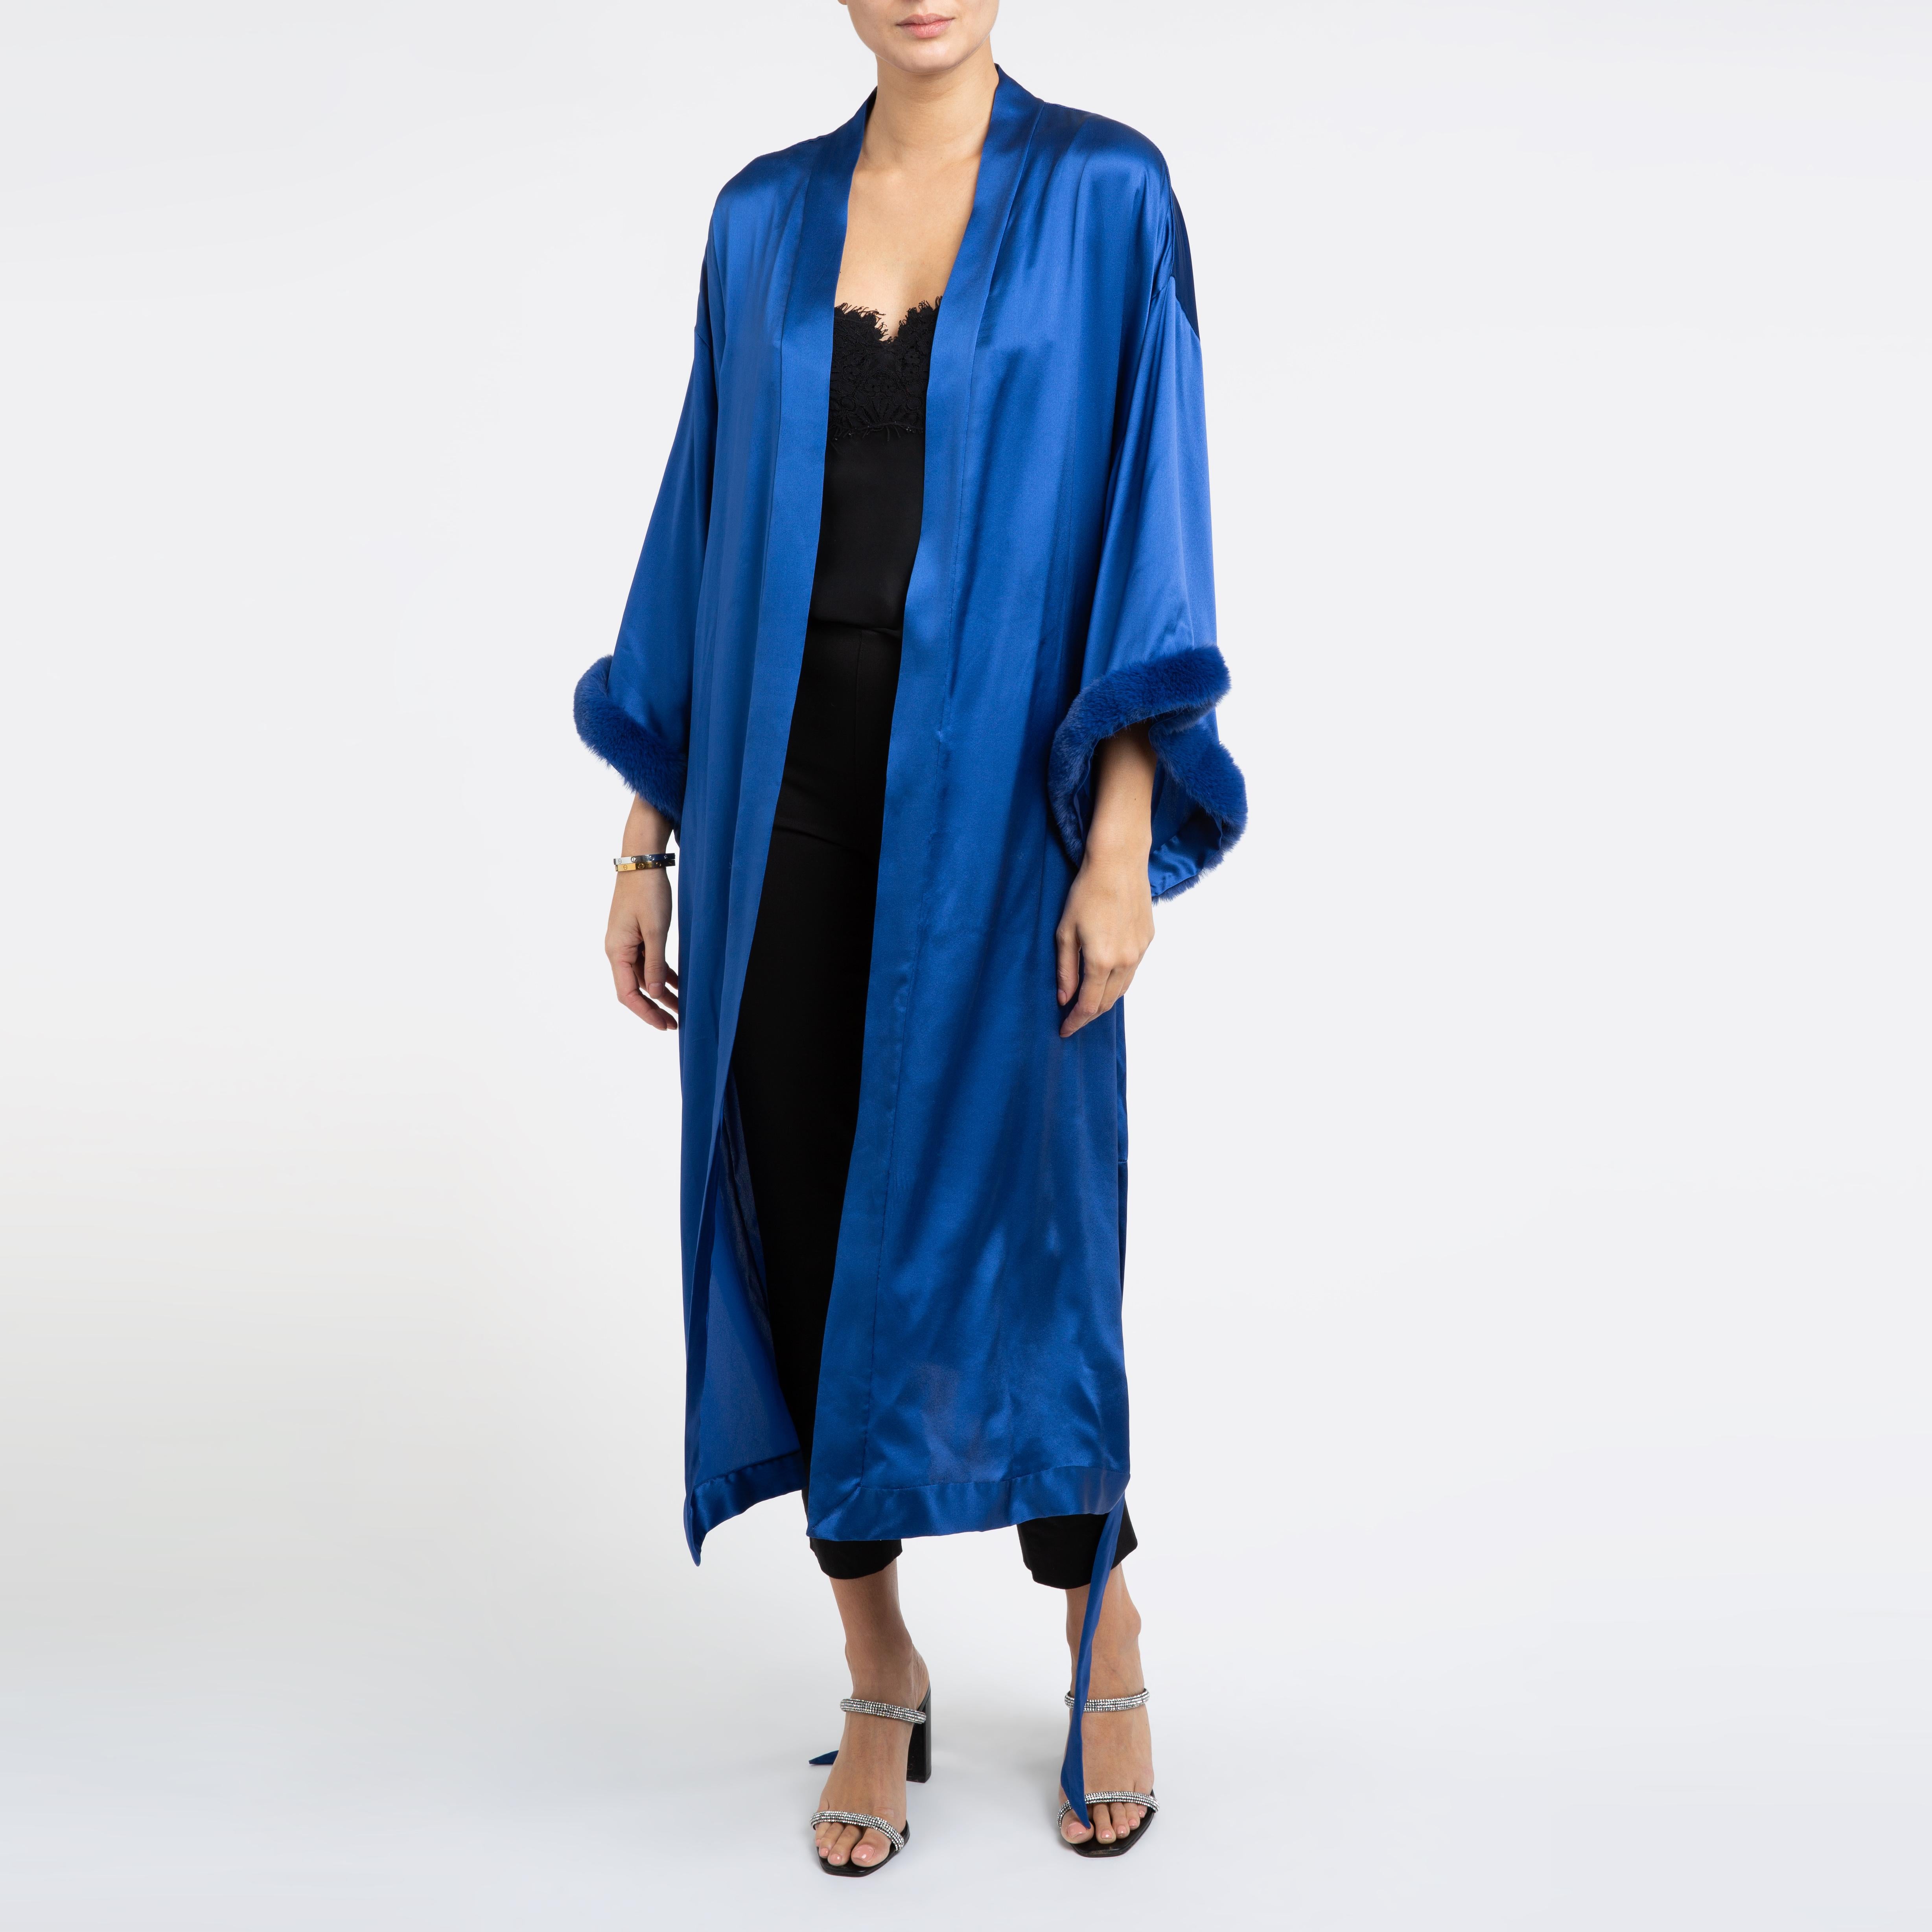 Verheyen London - Kimono bleu en satin de soie italien avec fausse fourrure - Taille unique

Le Kimono Verheyen London est la robe parfaite pour une tenue de soirée ou une robe manteau à porter avec un jean et des talons en soirée.  
Fabriqué à la